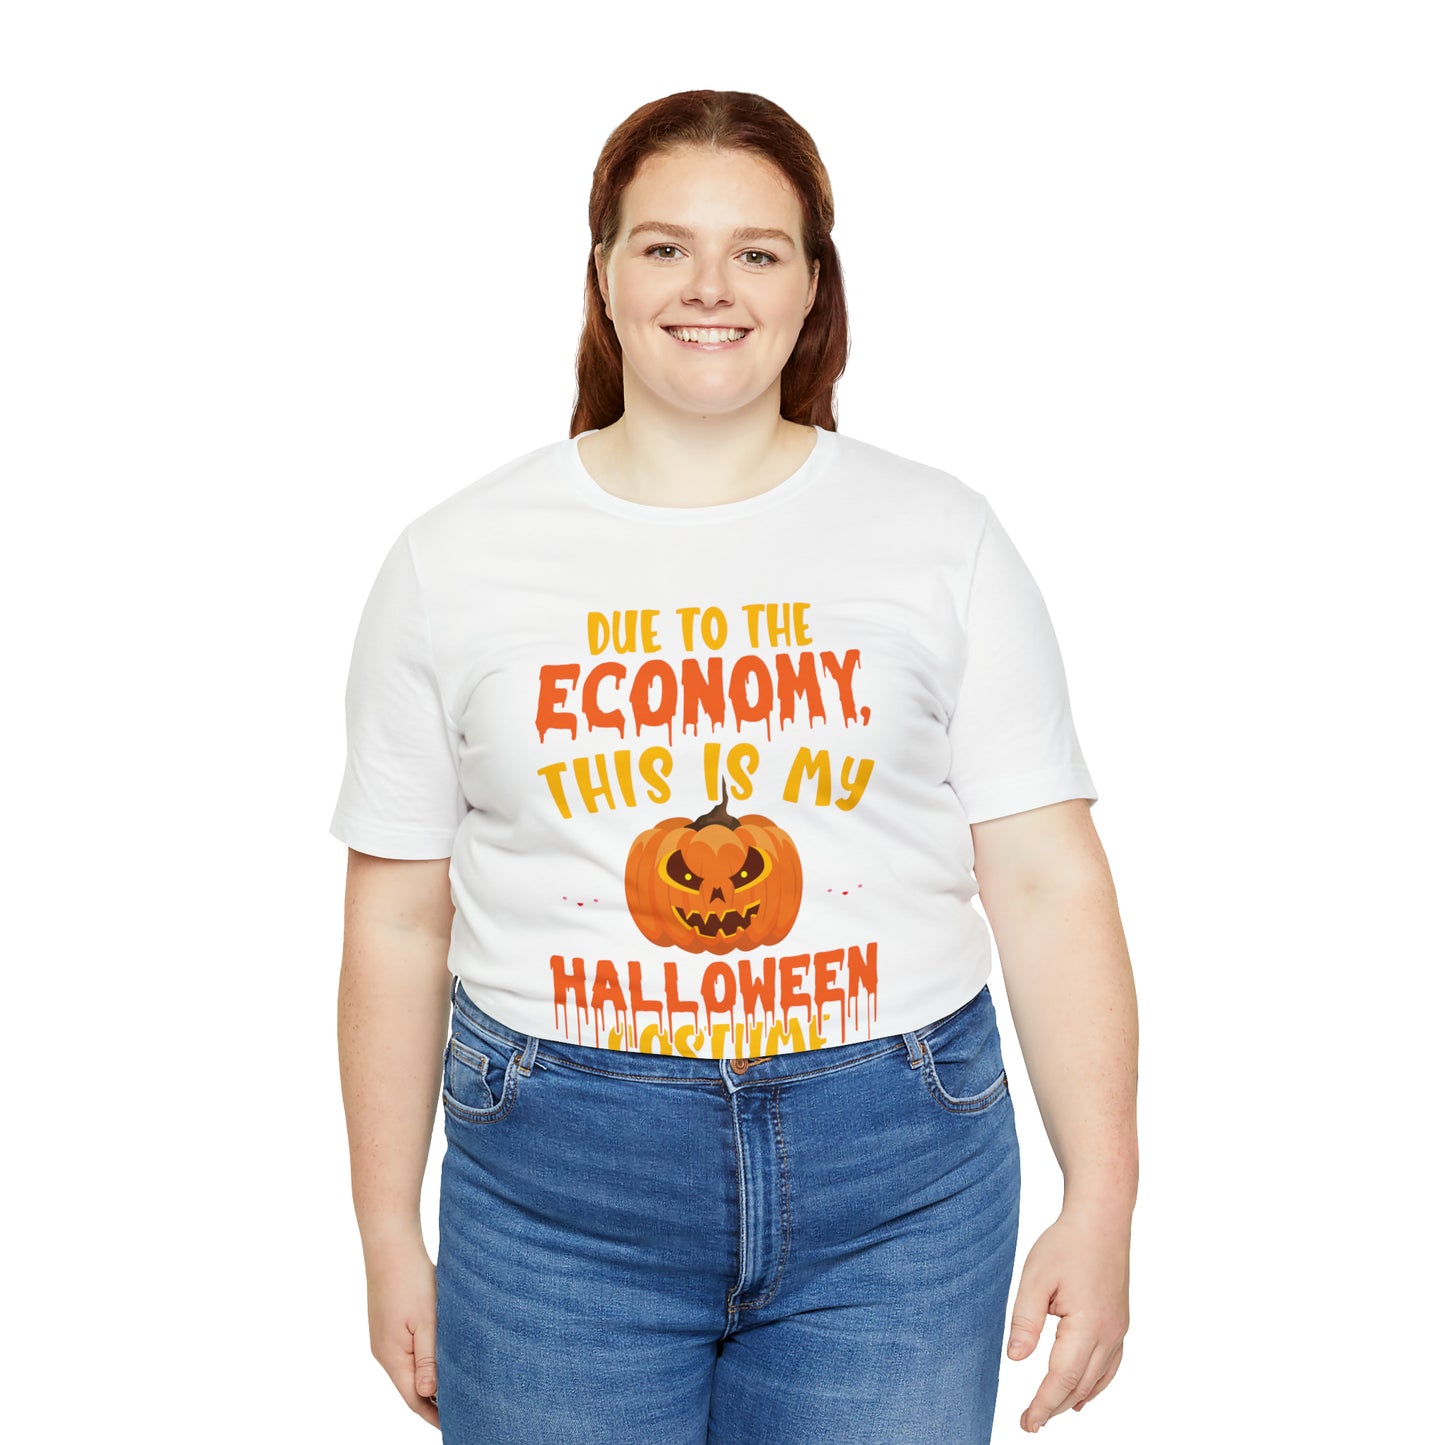 Economy Halloween Costume